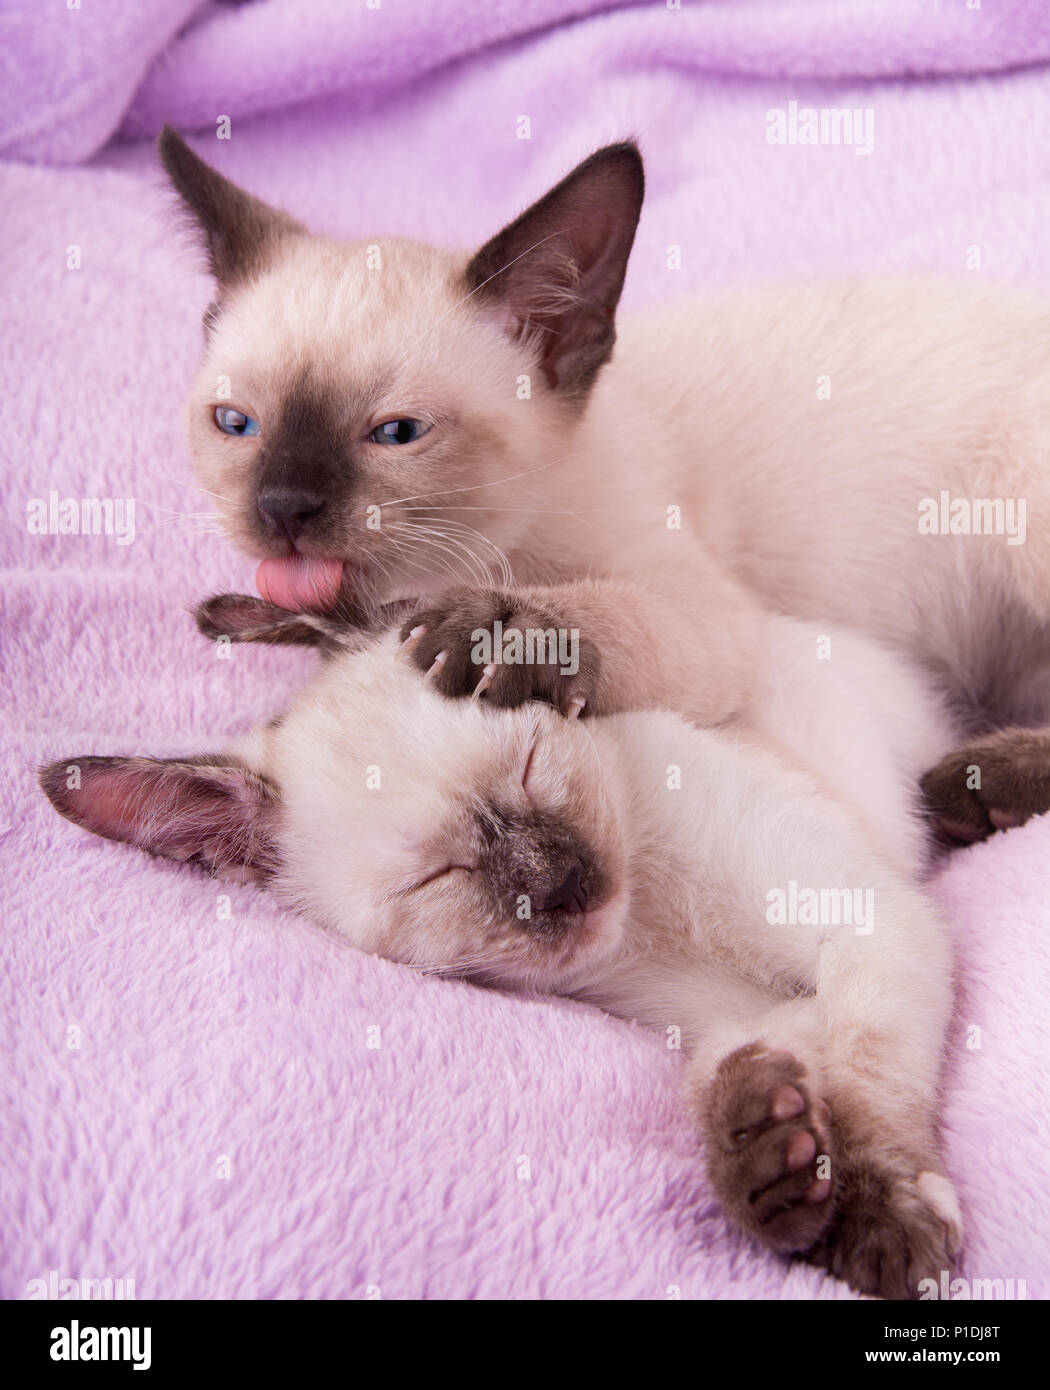 Chaton siamois de lécher l'oreille de sa sœur pendant qu'elle dort sur une couverture en polaire violet Banque D'Images